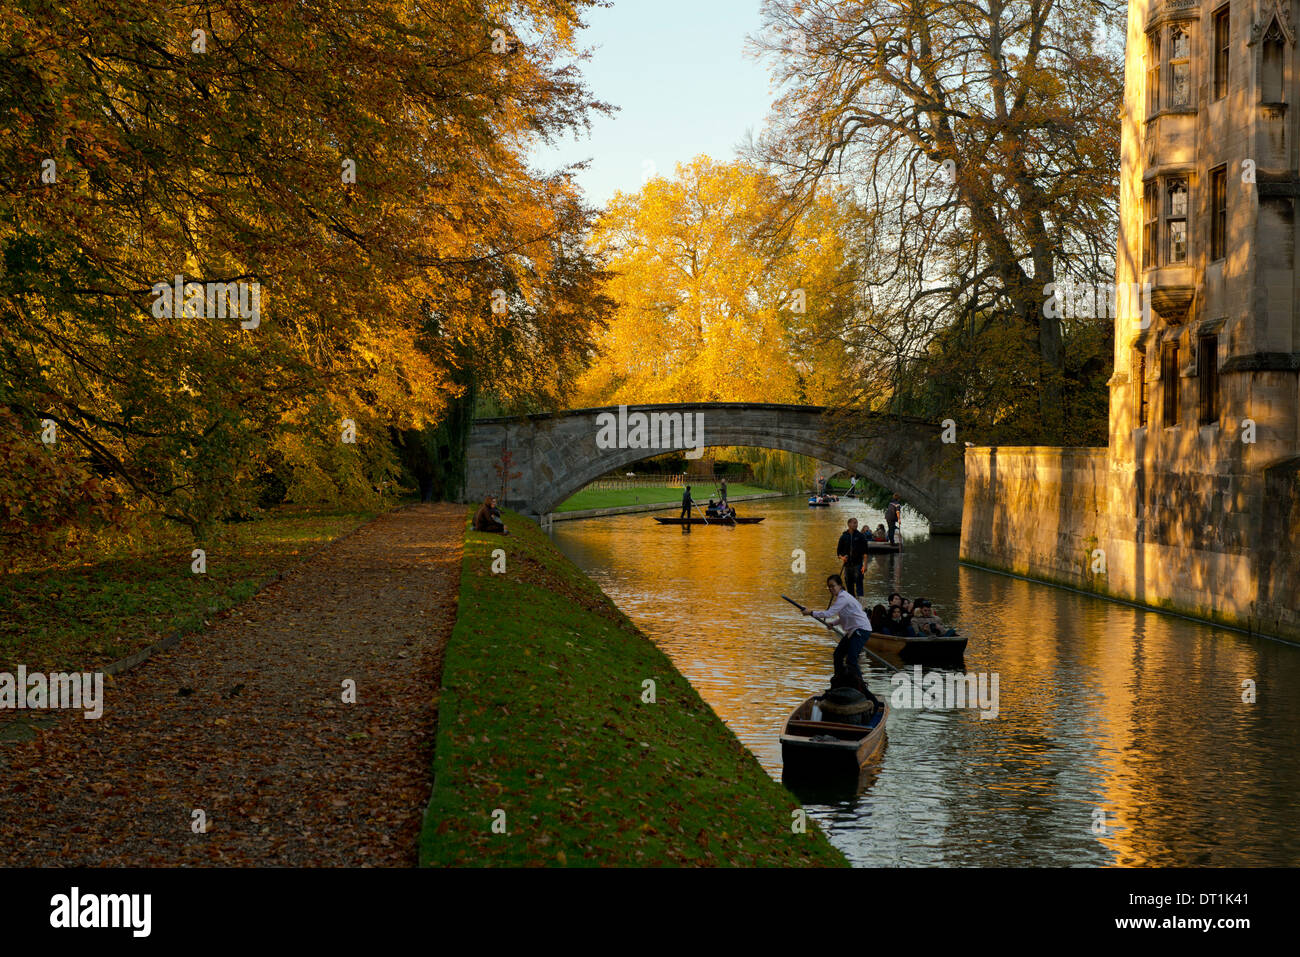 Plates sur la came sur une journée d'automne, Cambridge, Cambridgeshire, Angleterre, Royaume-Uni, Europe Banque D'Images